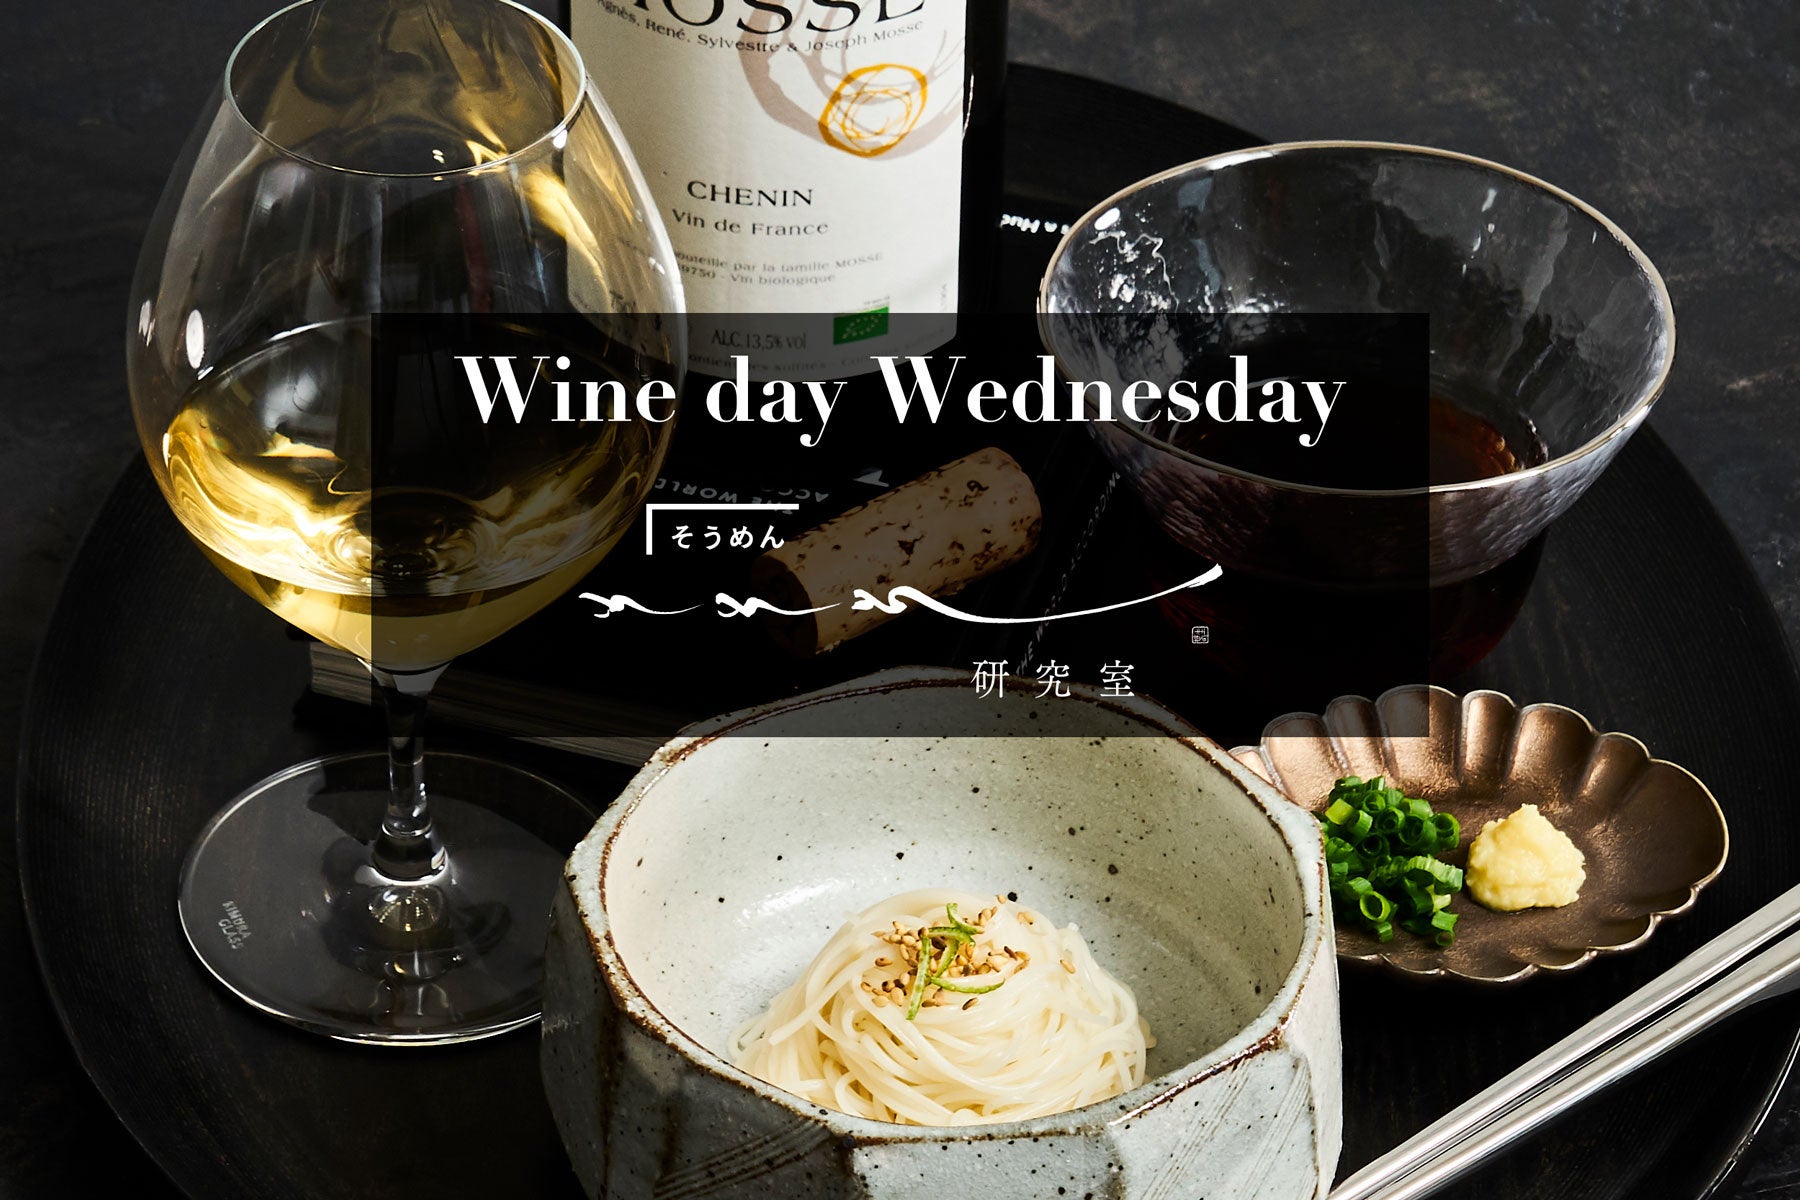 【水曜日はワインの日】Wine day Wednesday! 記念すべき第一回目は